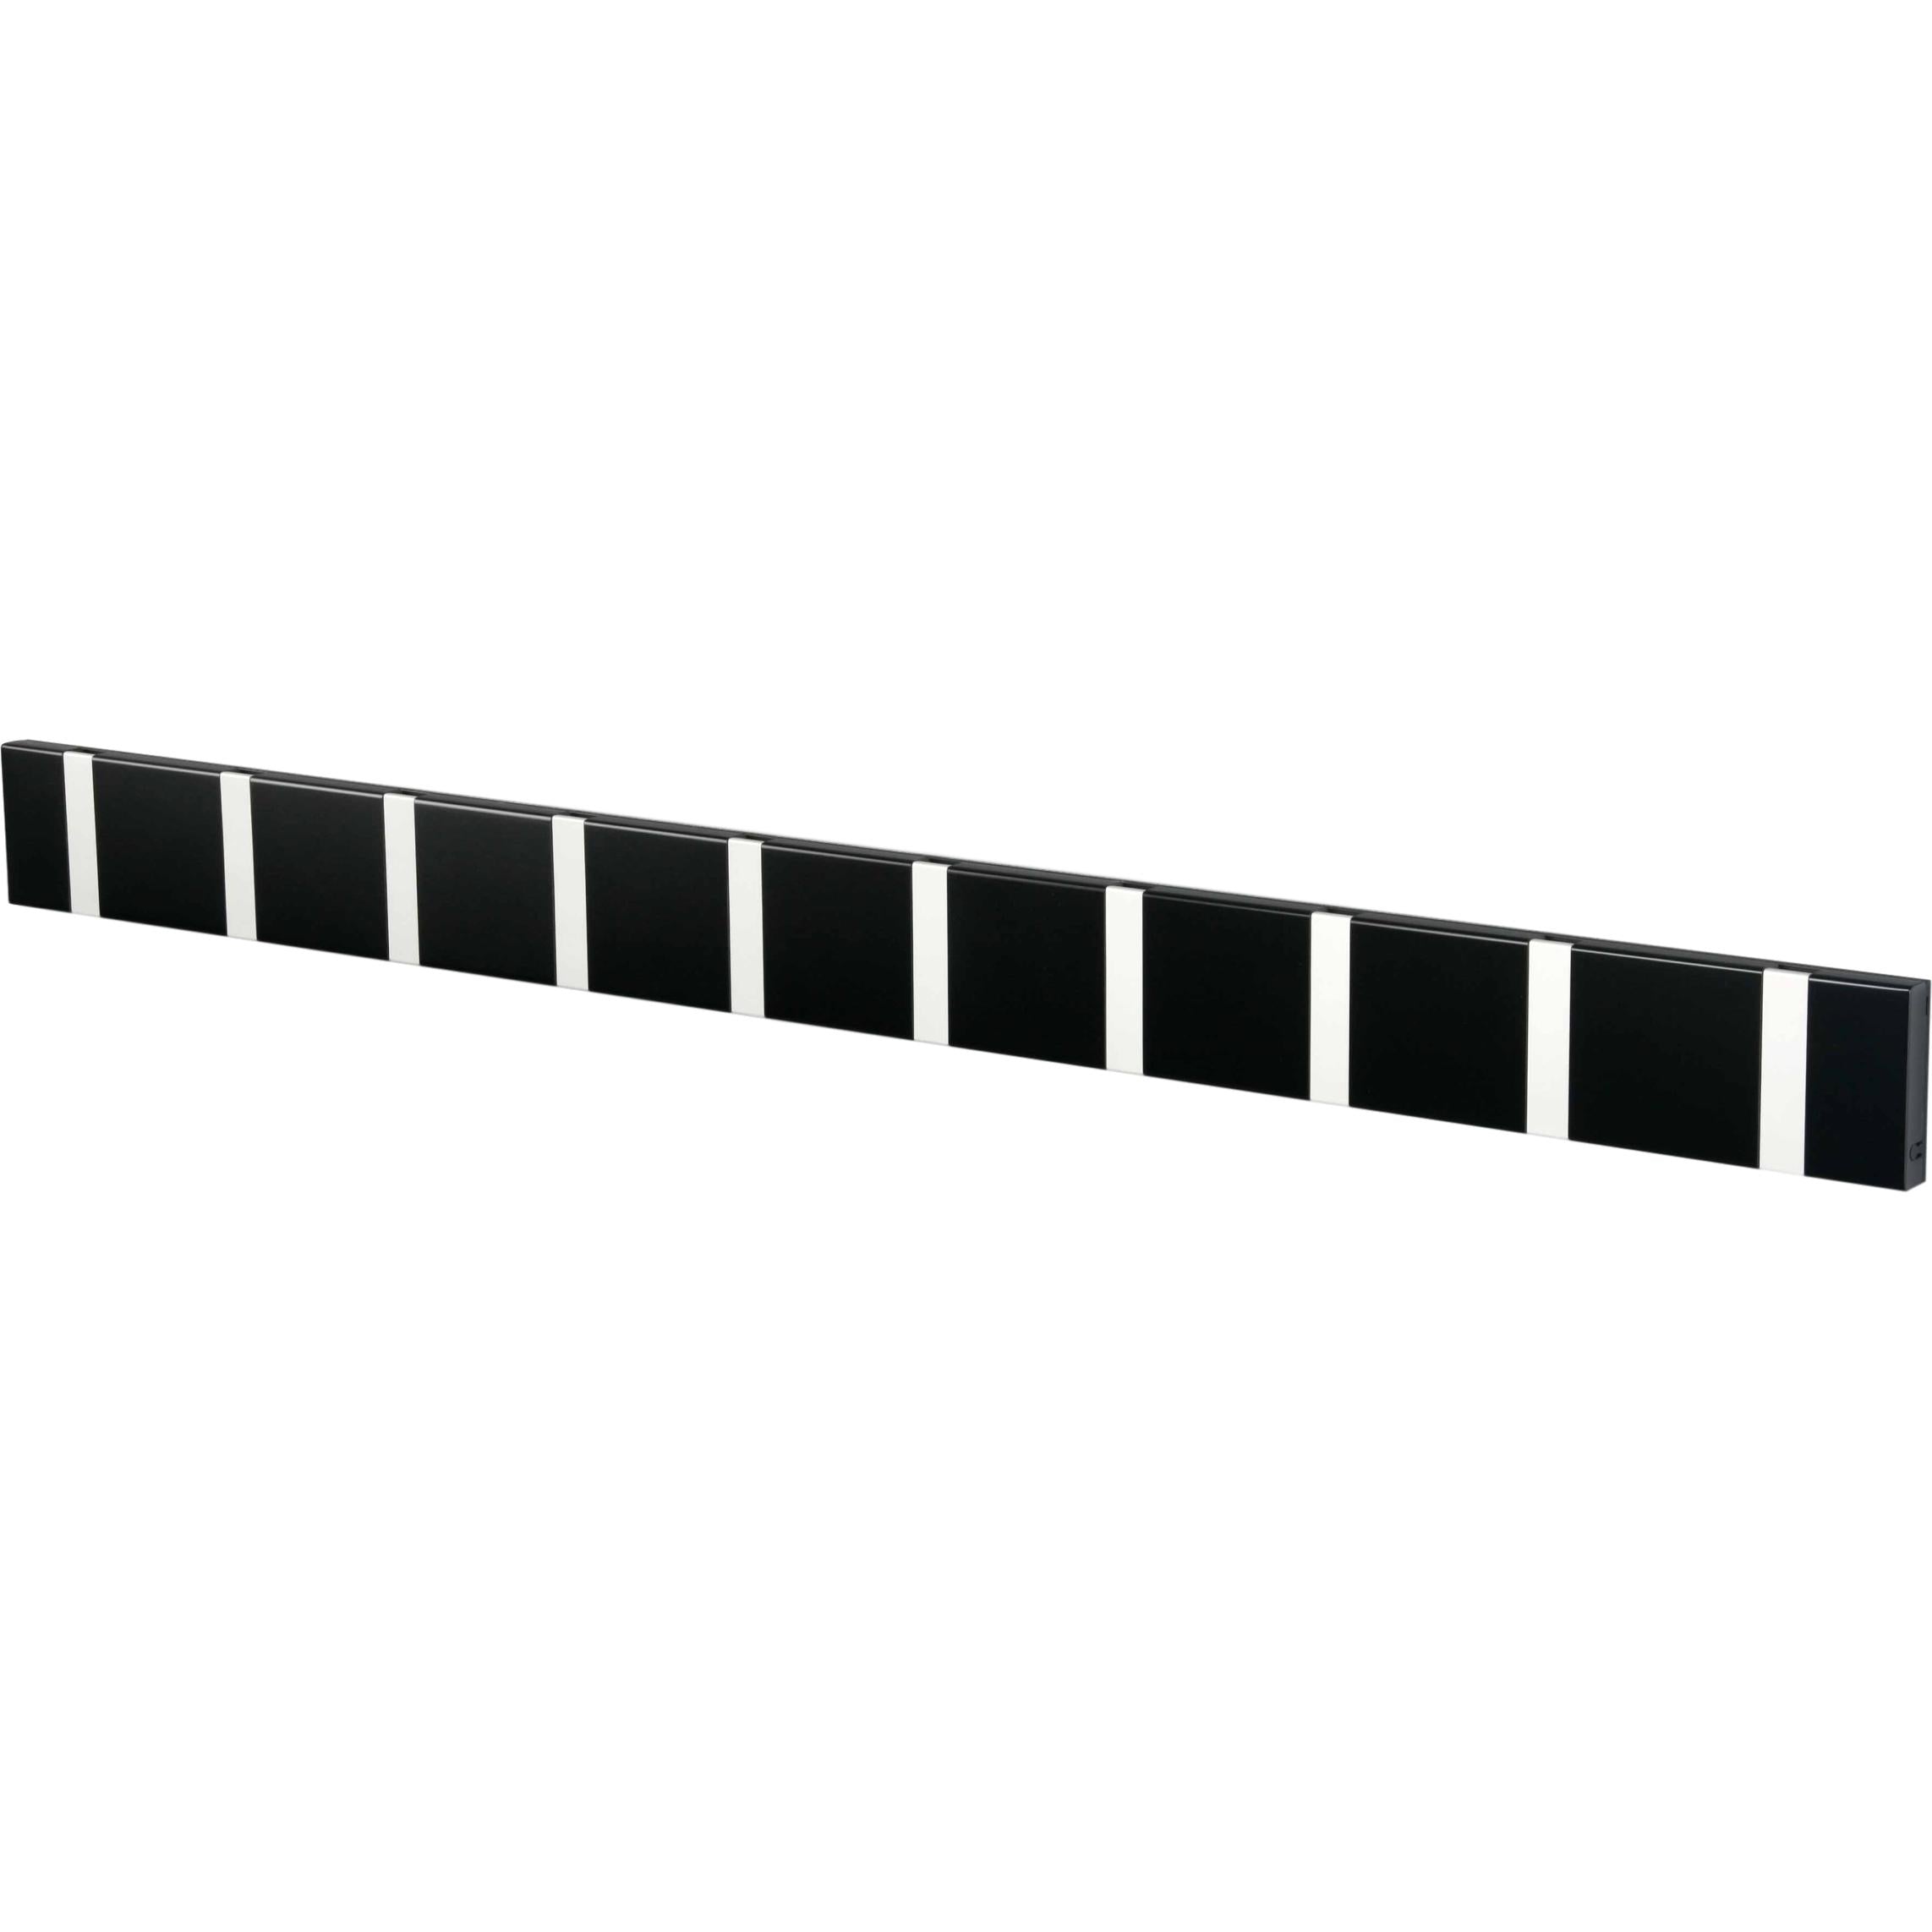 Loca Knax horizontaler Kleiderregal 10 Haken, schwarz/grau